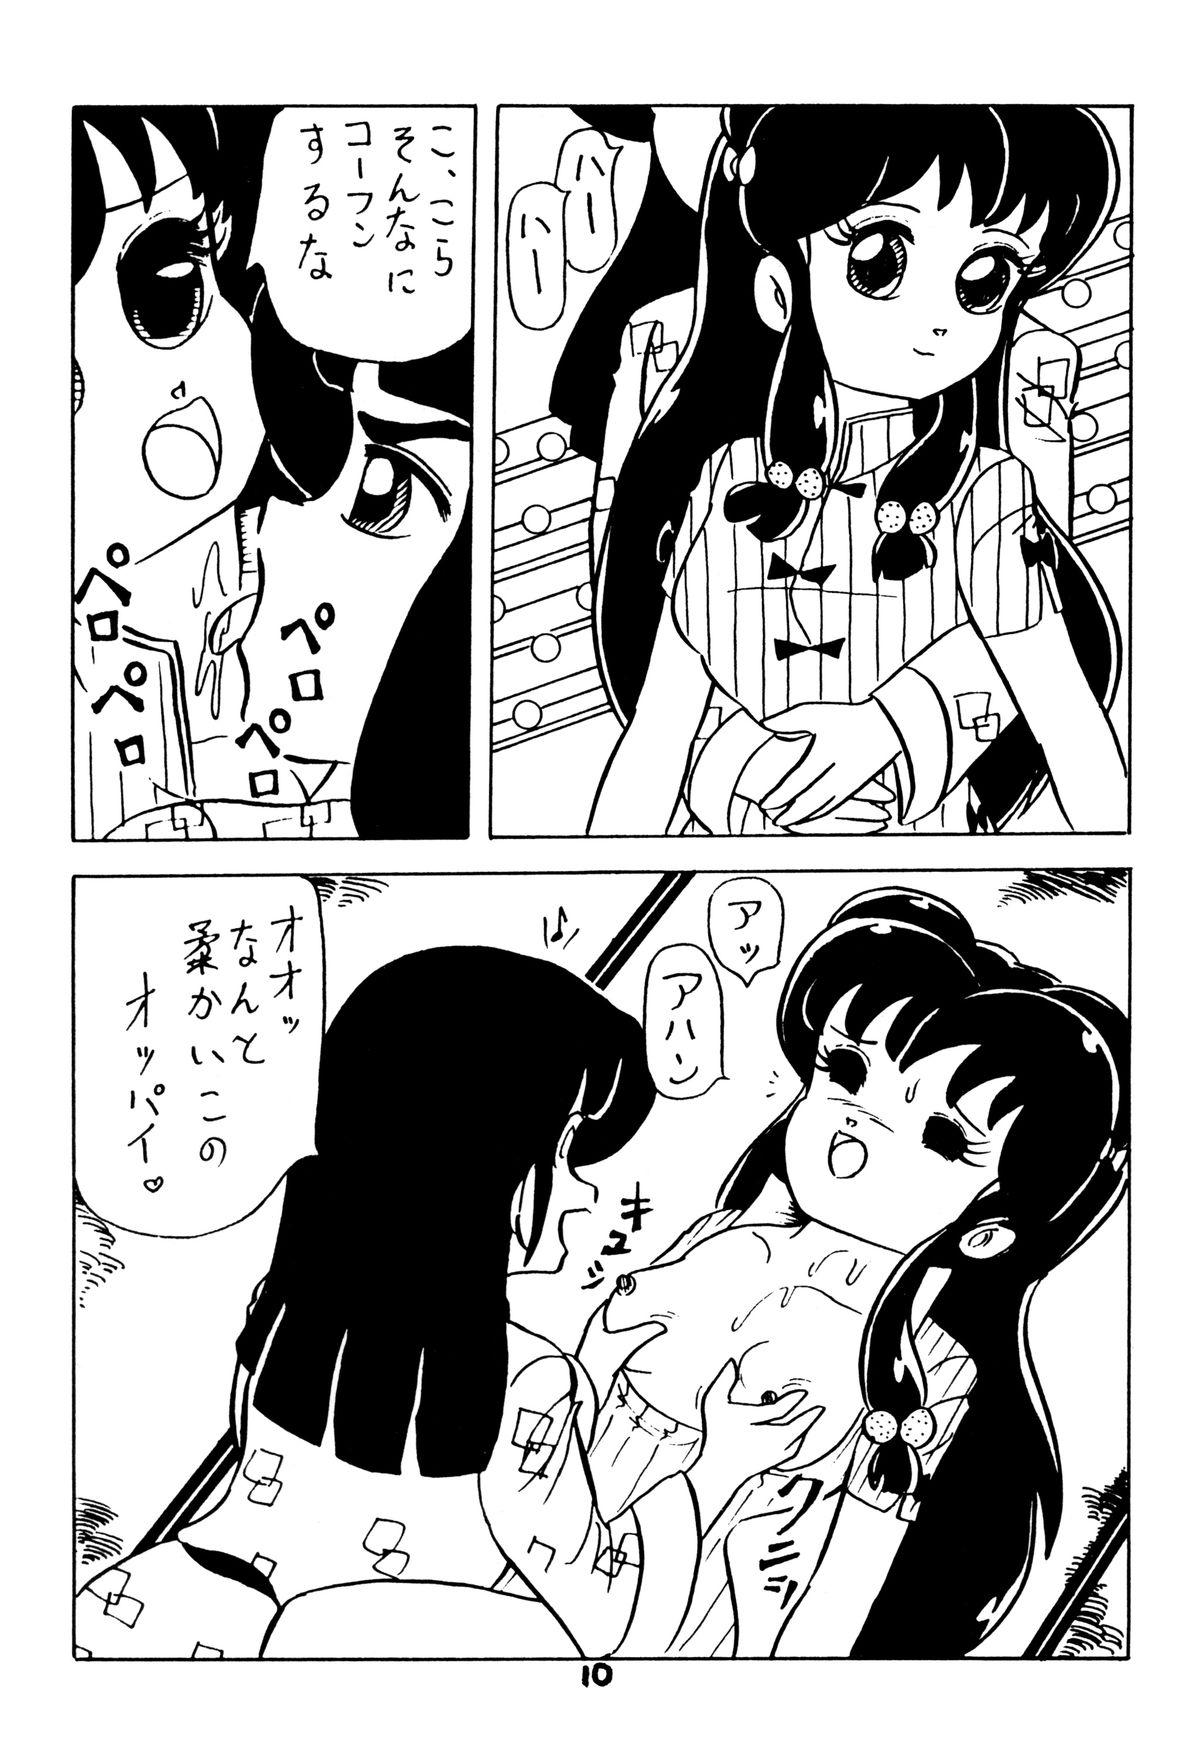 Nasty Atsui-cha 15 - Ranma 12 Urusei yatsura Sex - Page 9